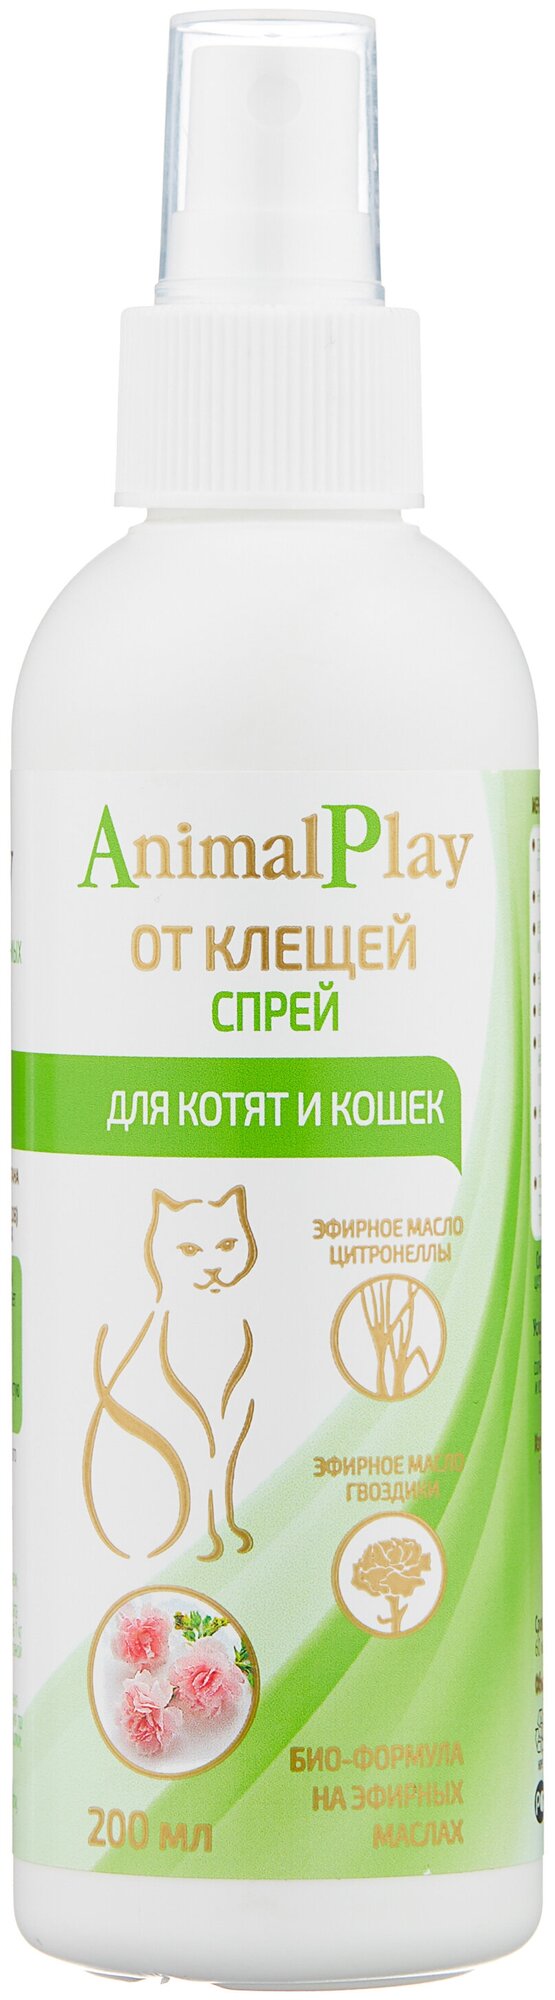 Animal Play спрей от блох и клещей репеллентный для котят и кошек от 0.5 до 7 кг 1 шт. в уп., 1 уп.